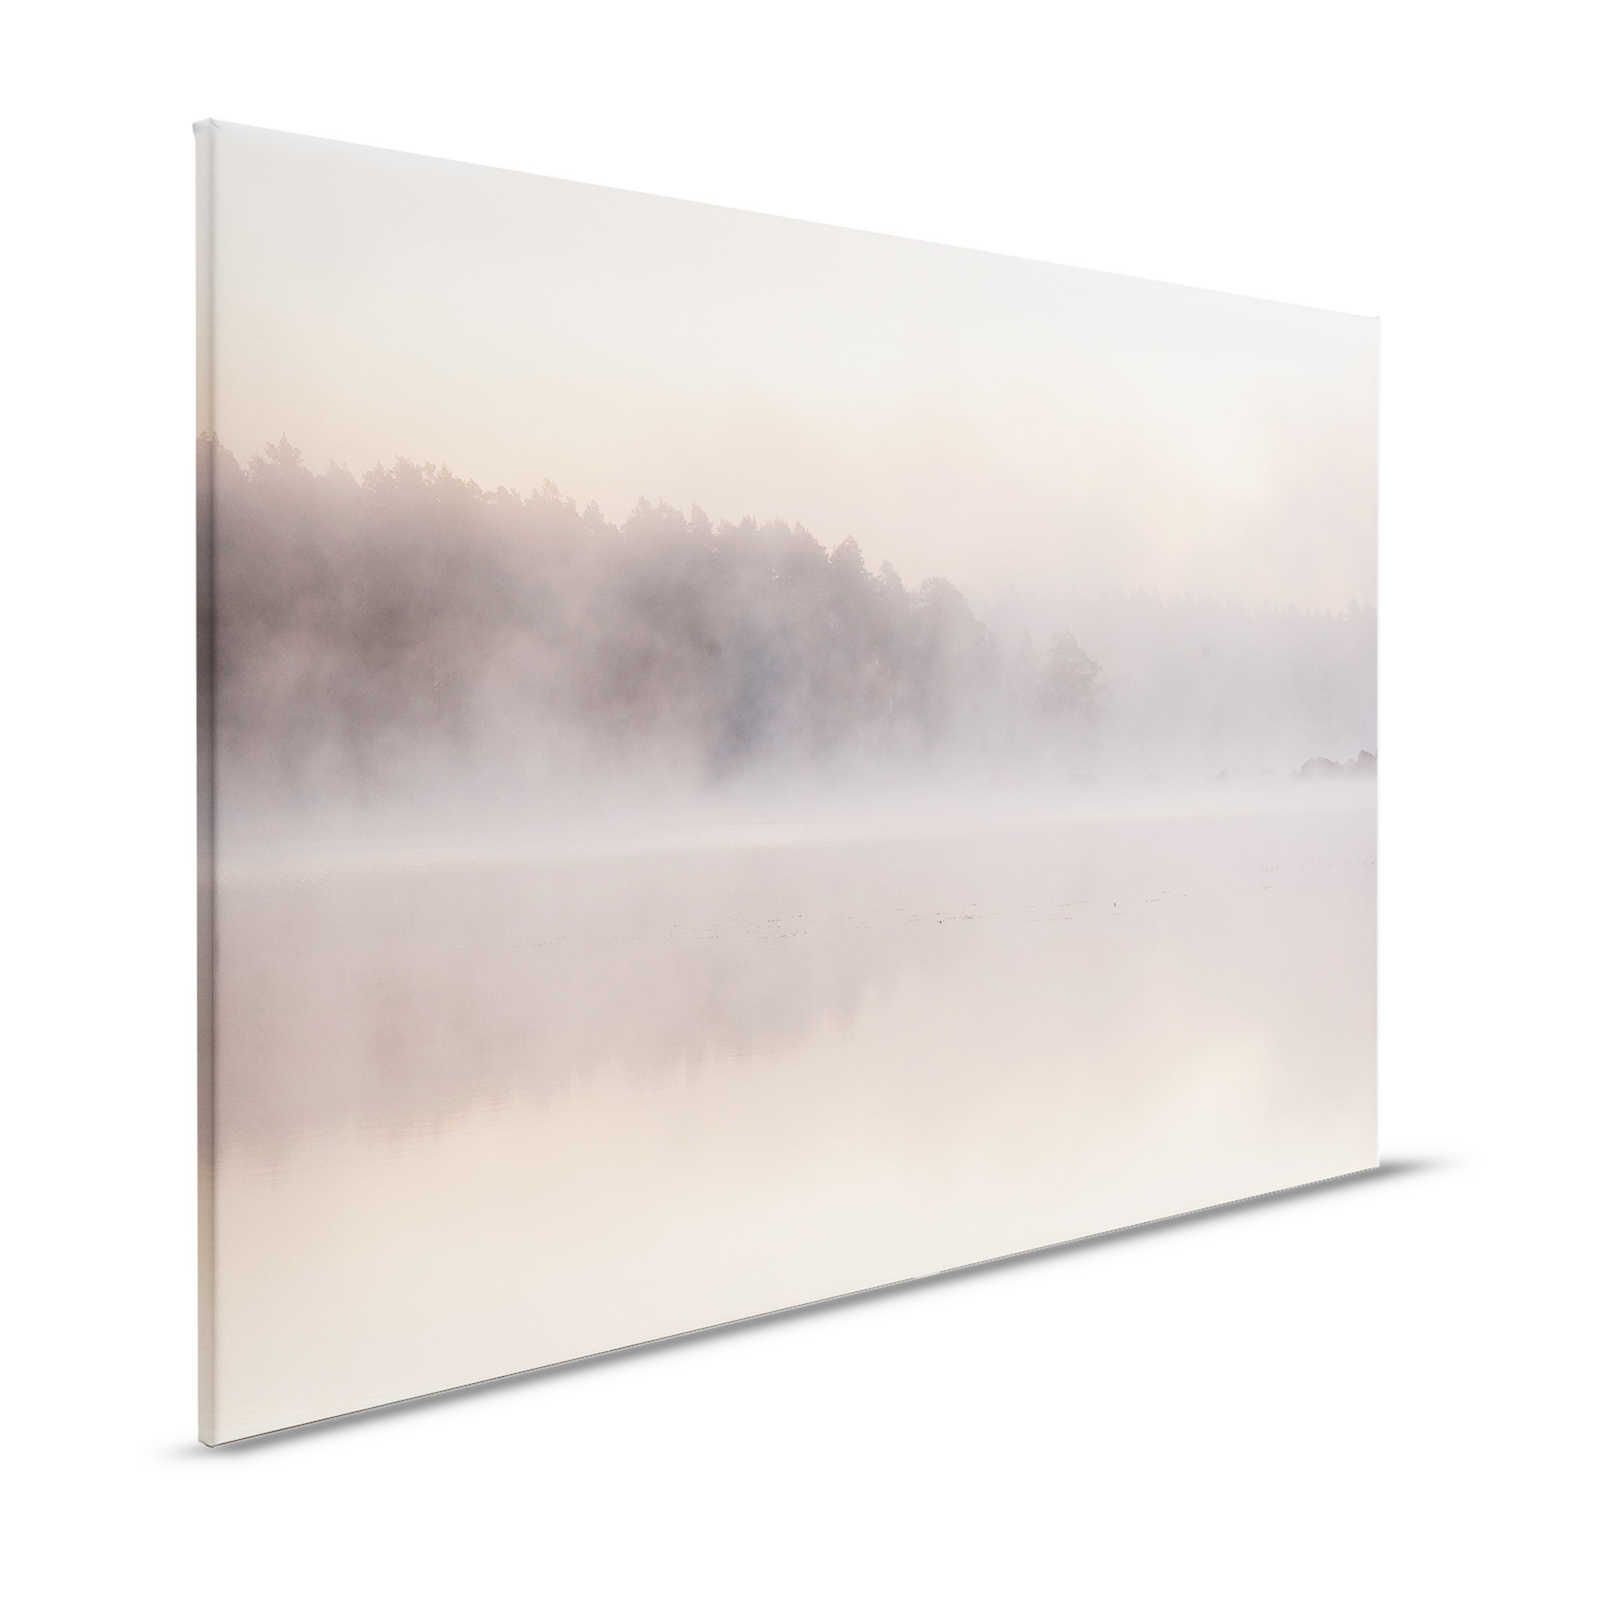 Avalon 2 - Canvas schilderij Meer in de ochtend met vroege ochtendmist - 1,20 m x 0,80 m
